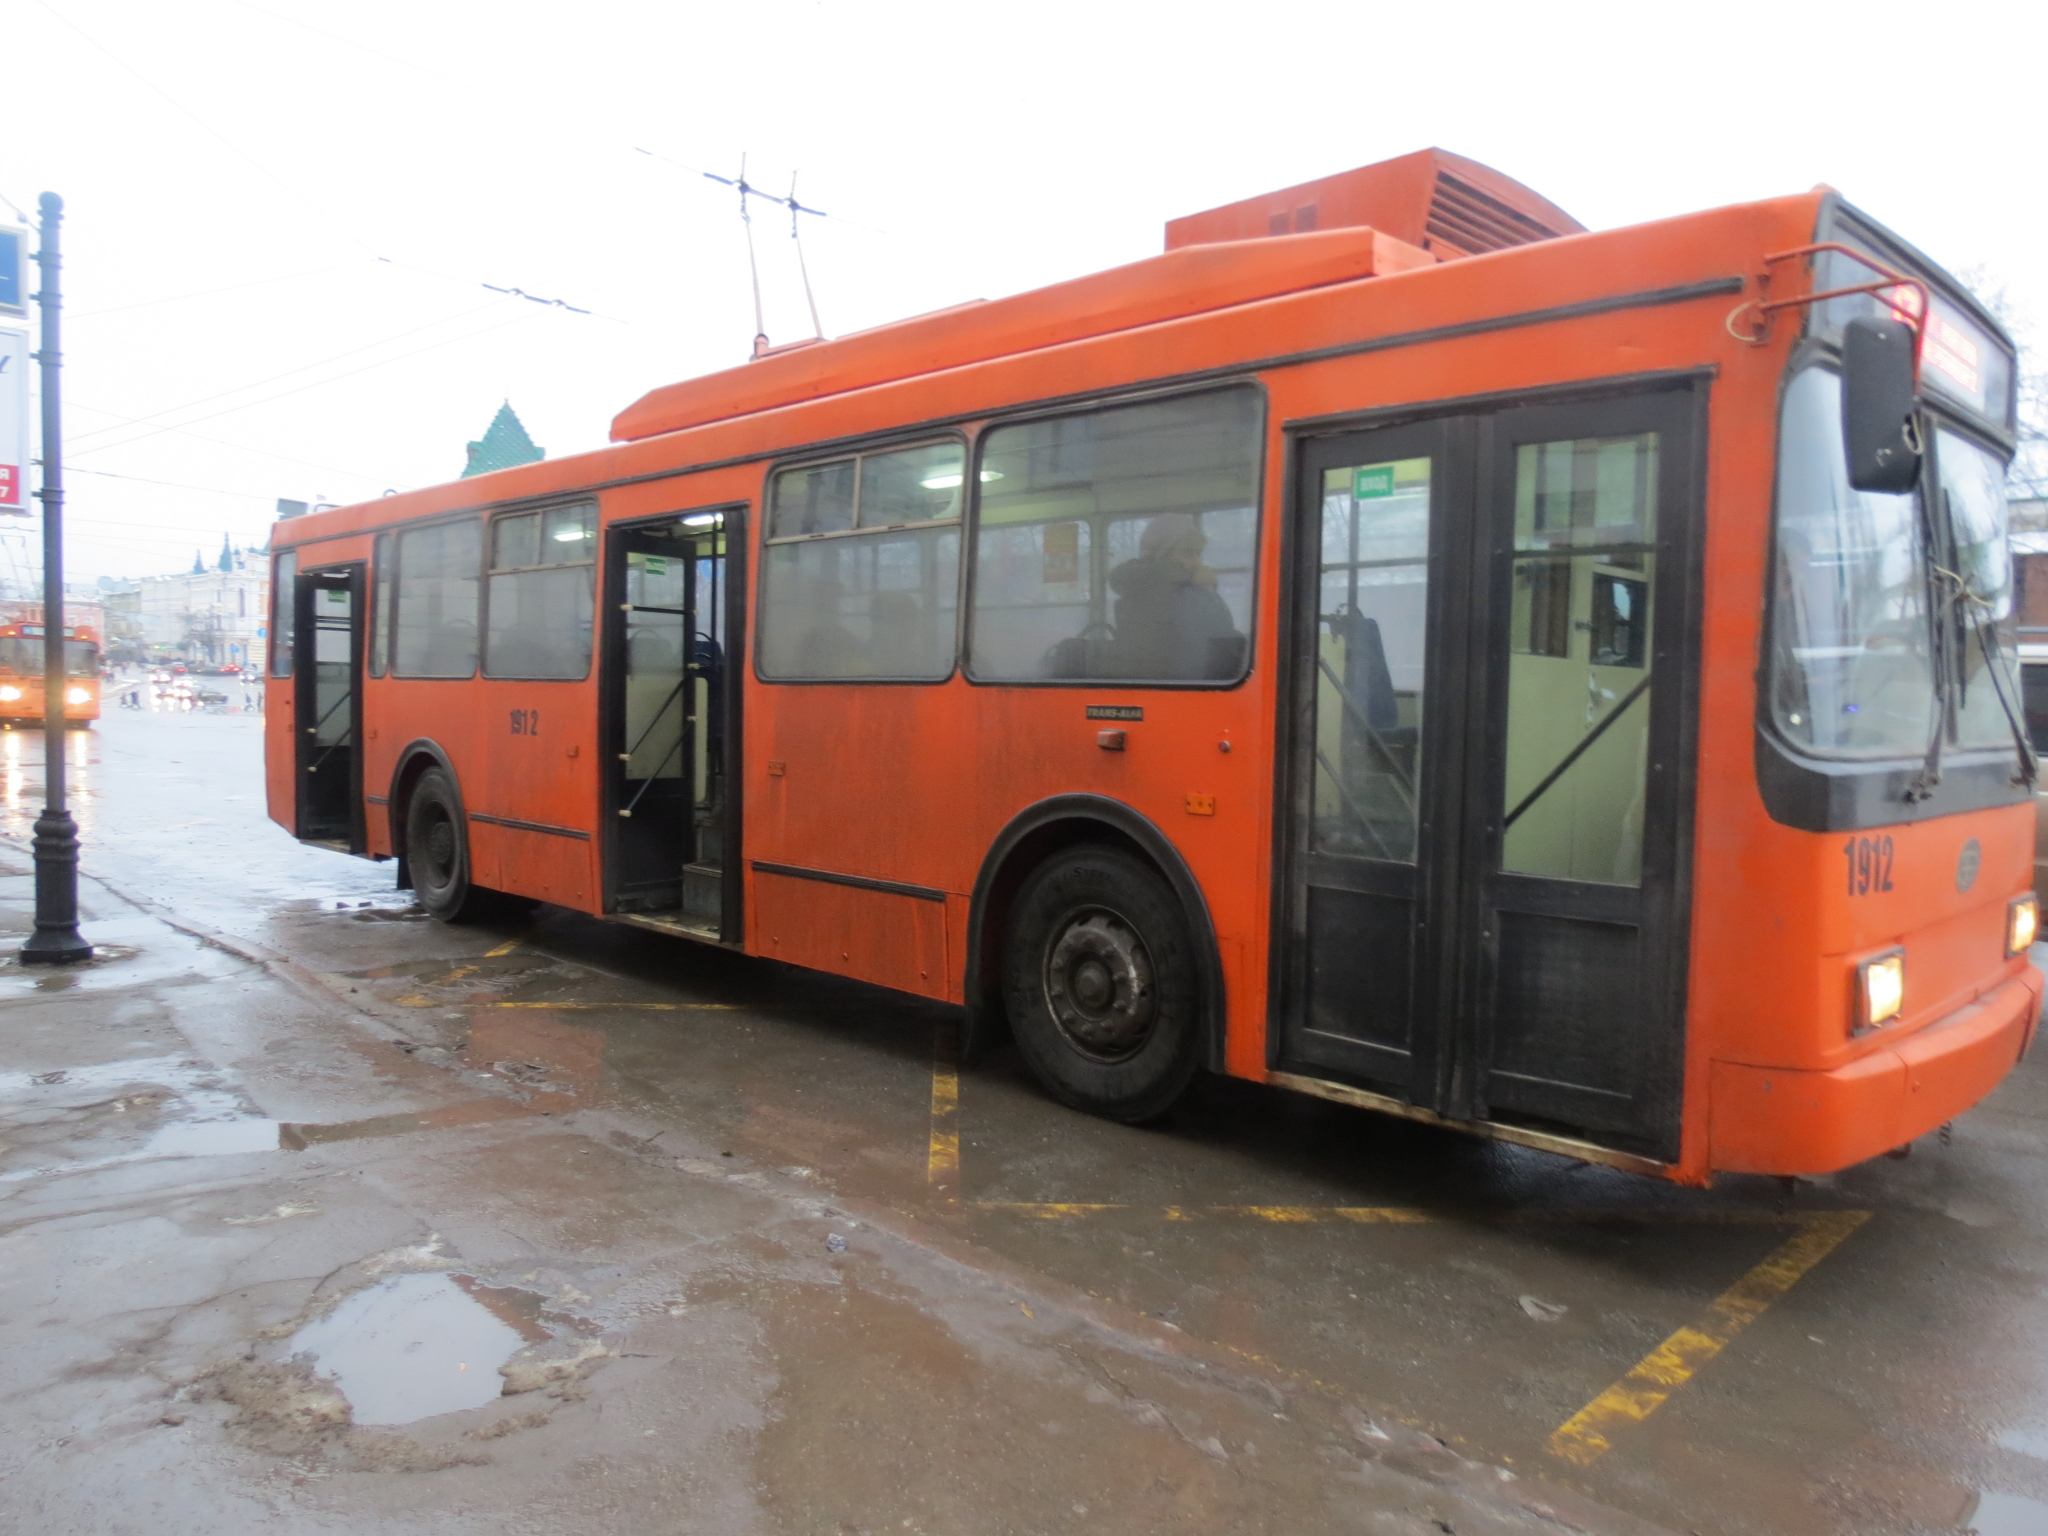 Нижний Новгород попал в ТОП-5 по качеству общественного транспорта